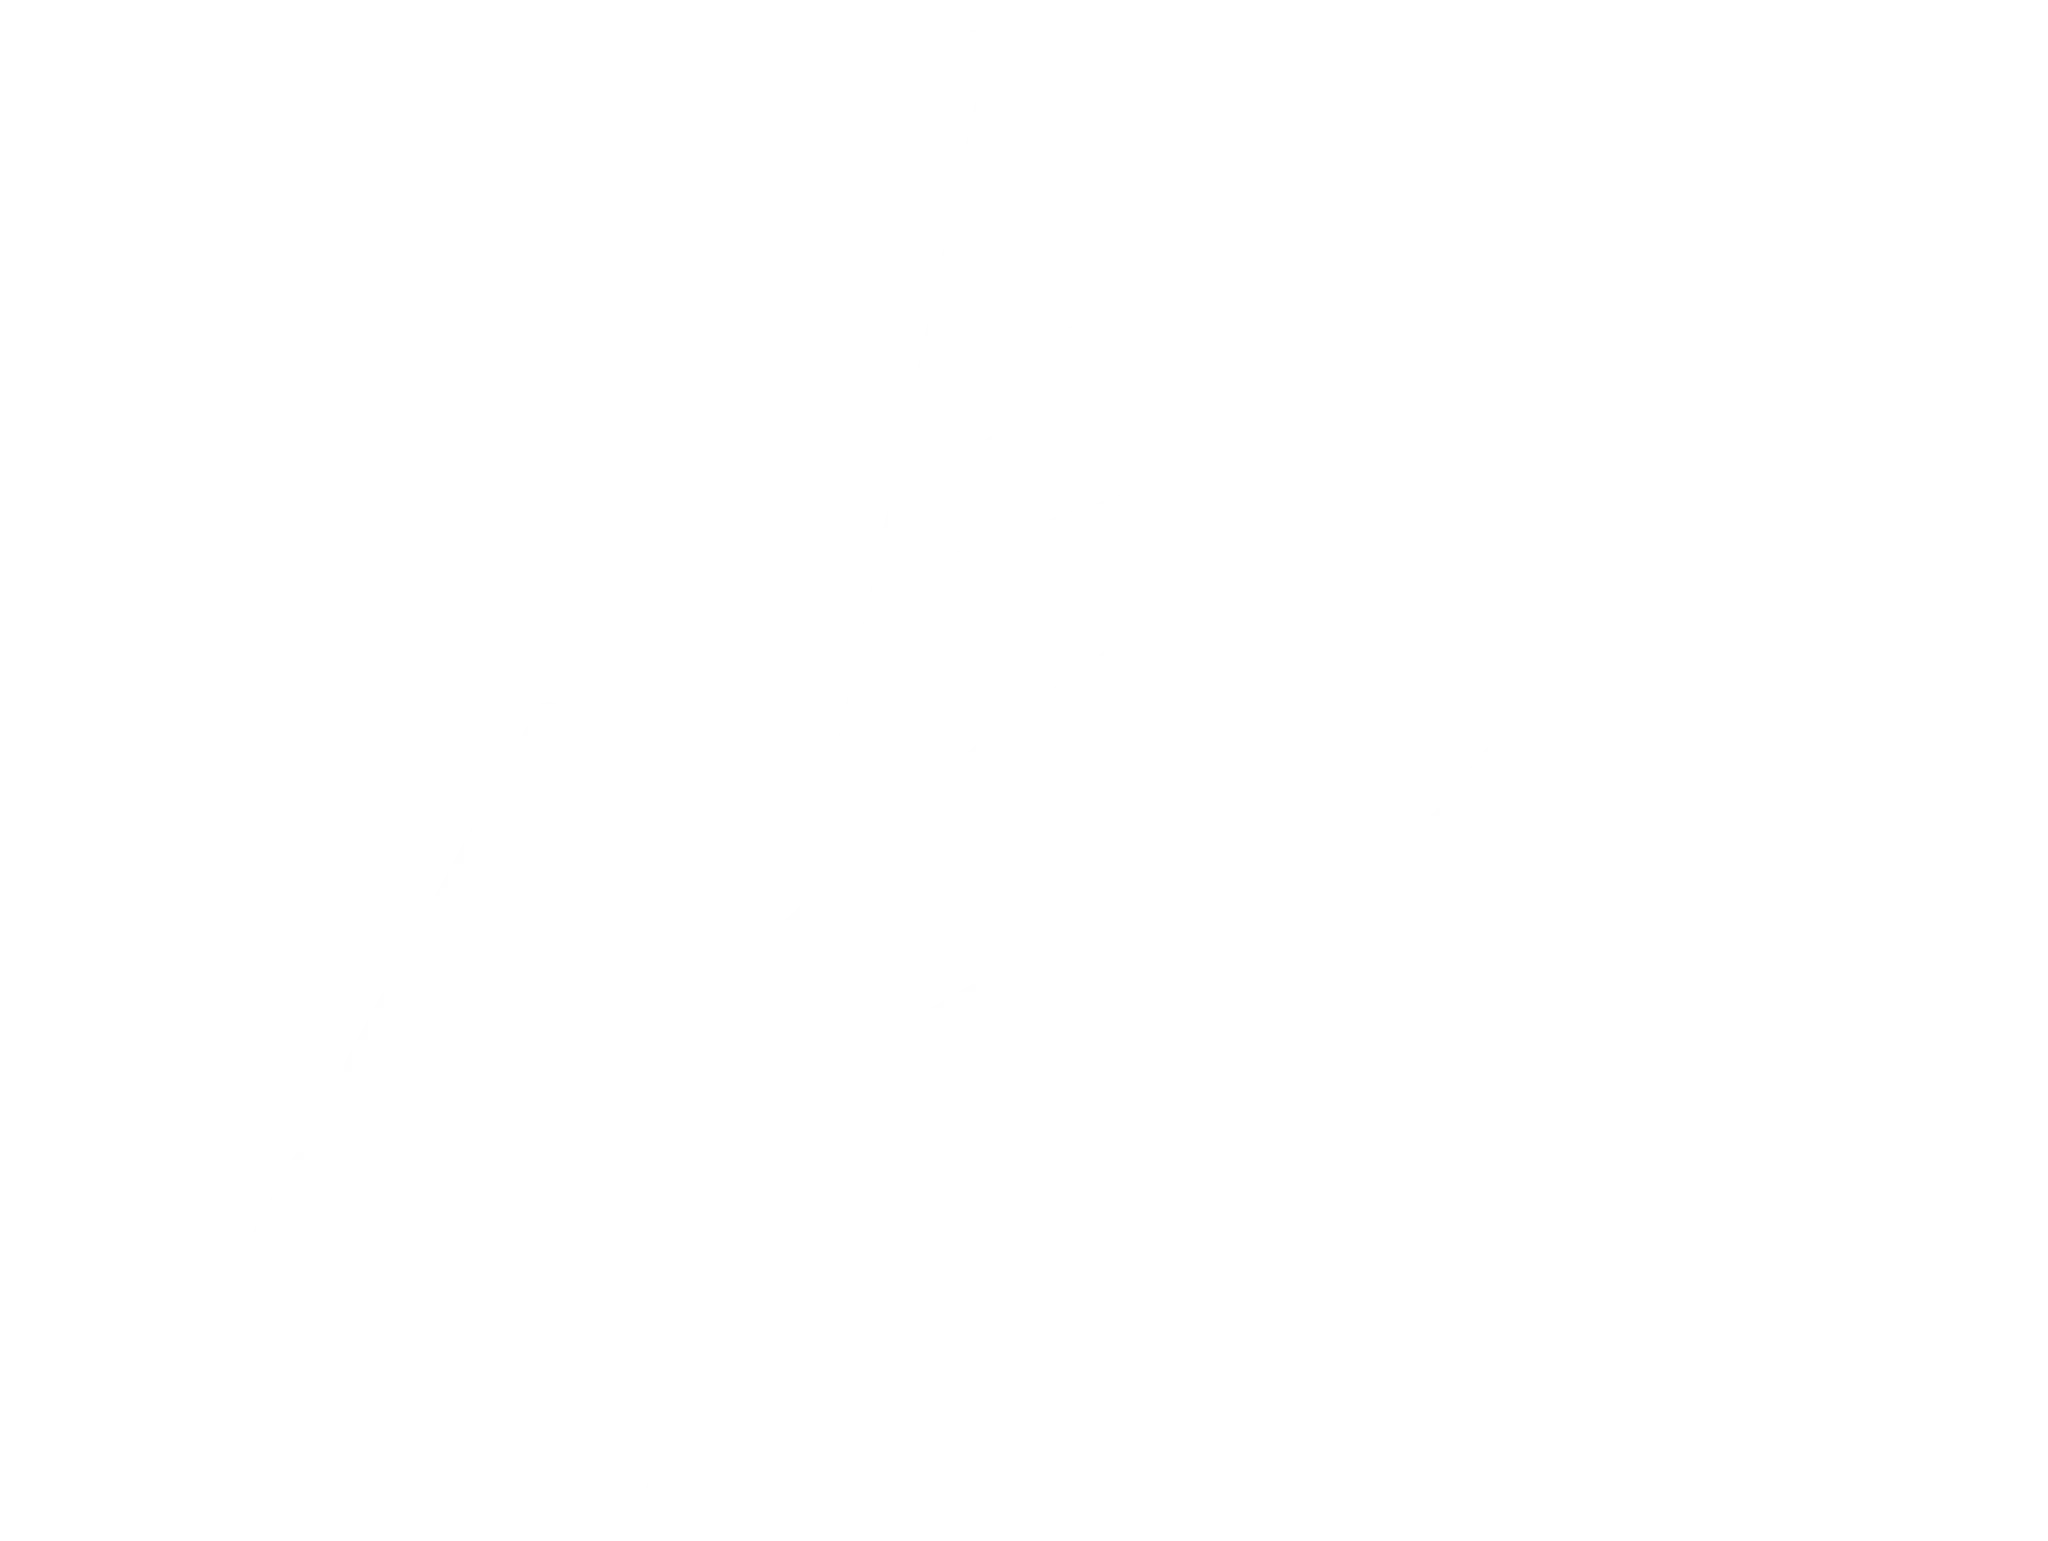 AOS Rental & Services Logo